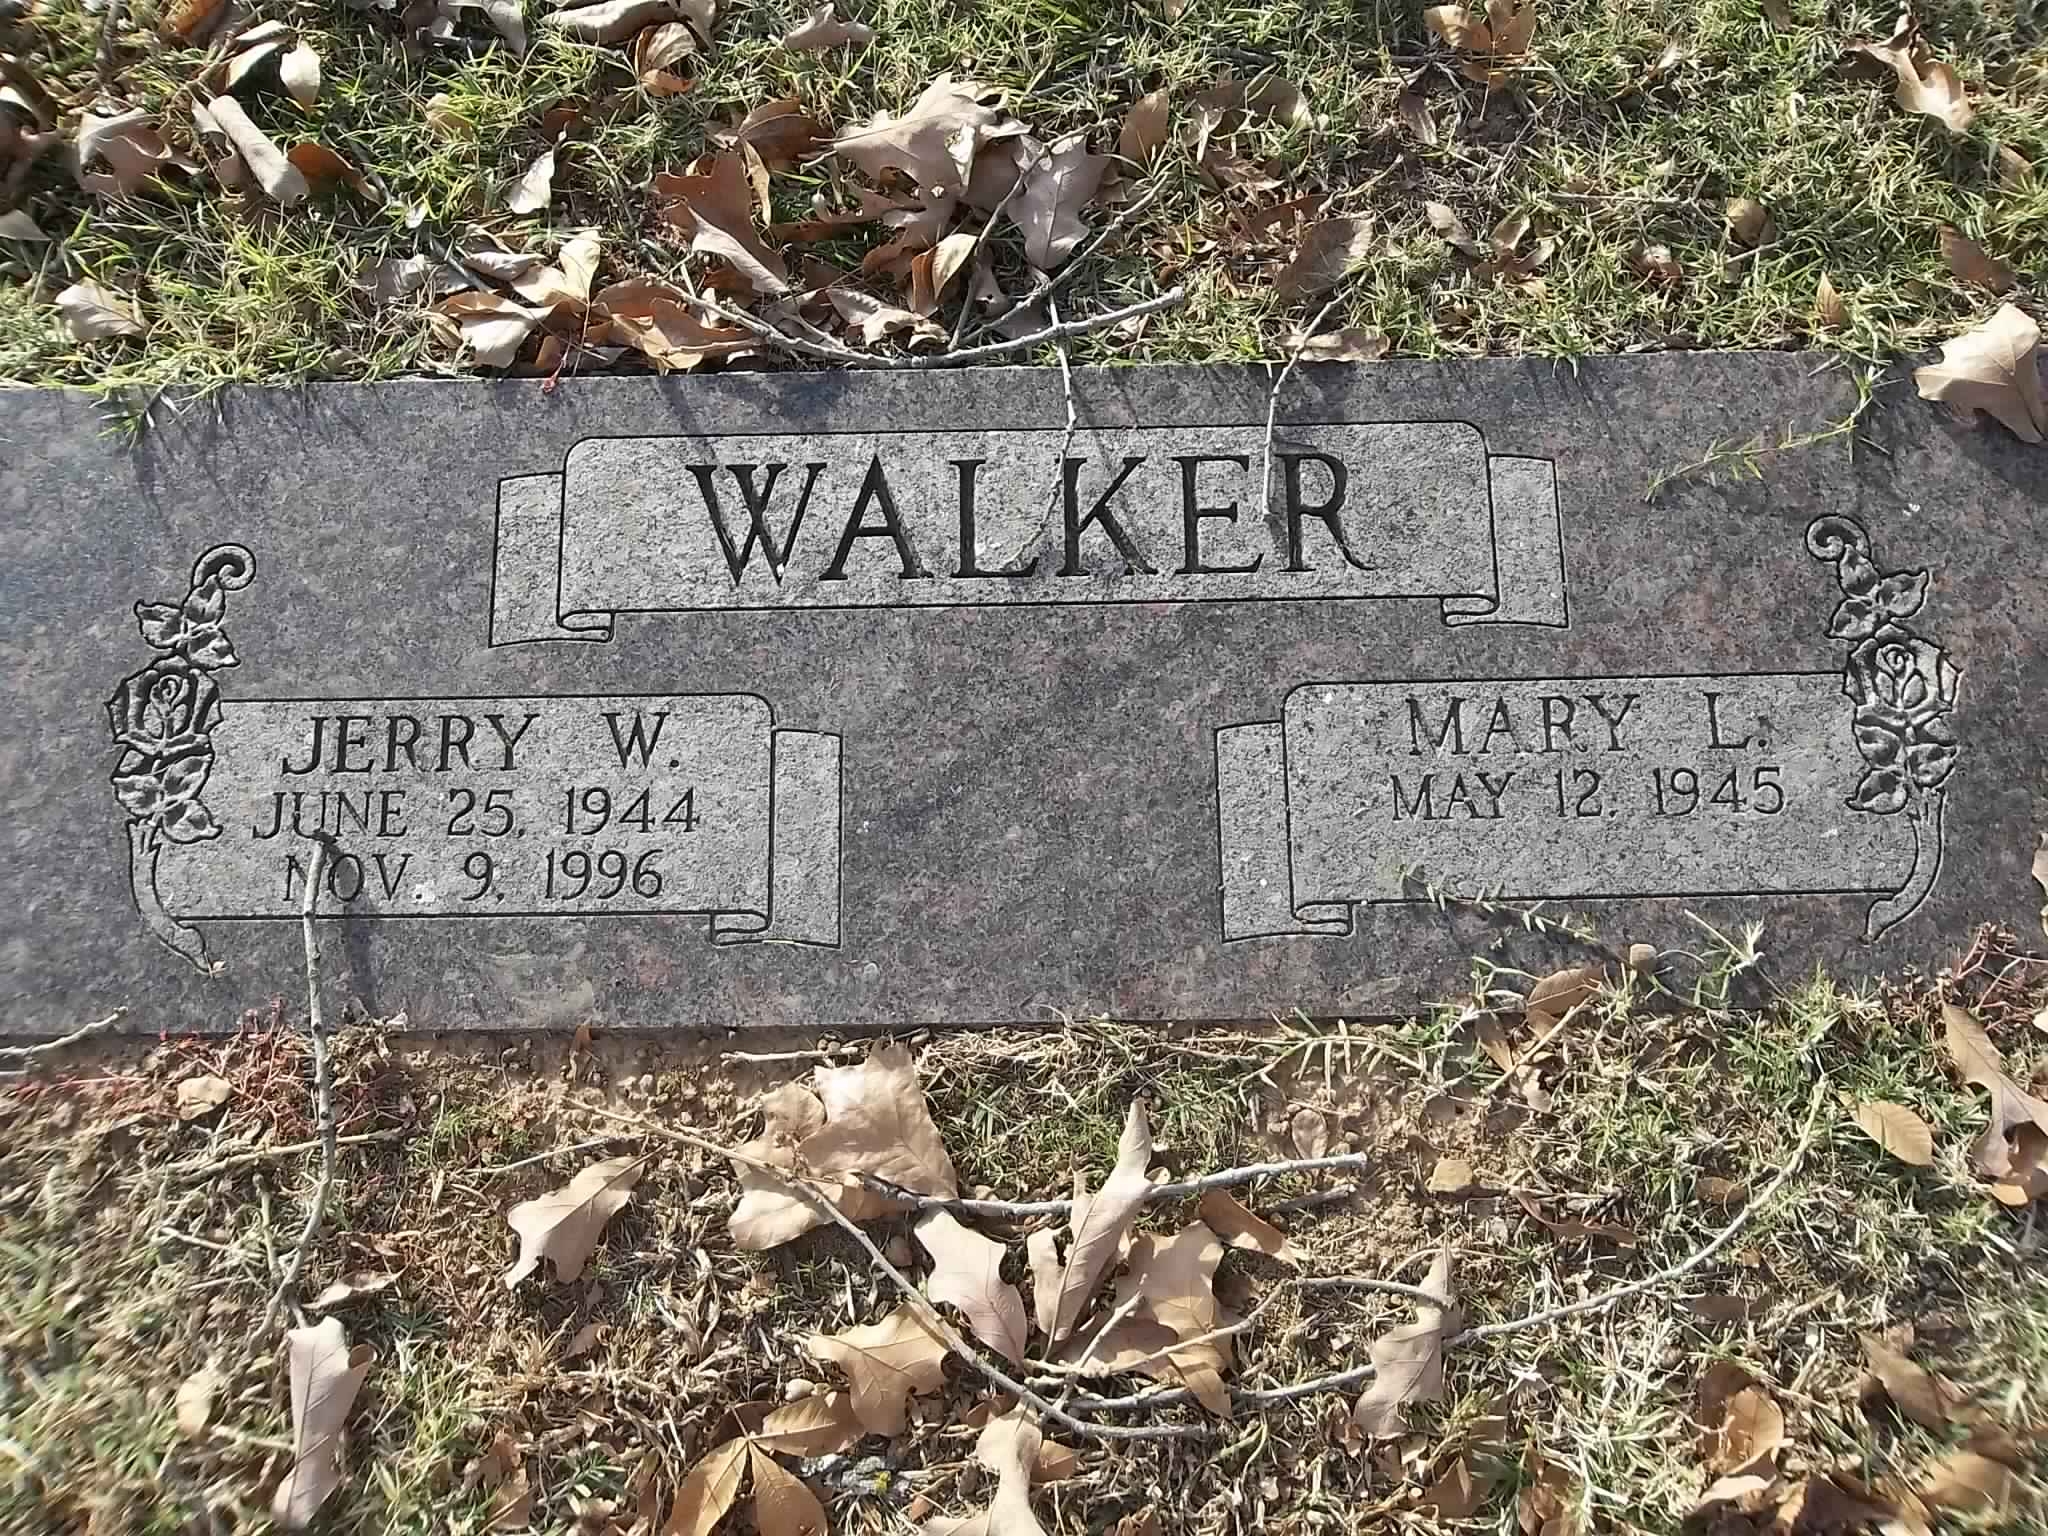 Jerry W Walker gravesite